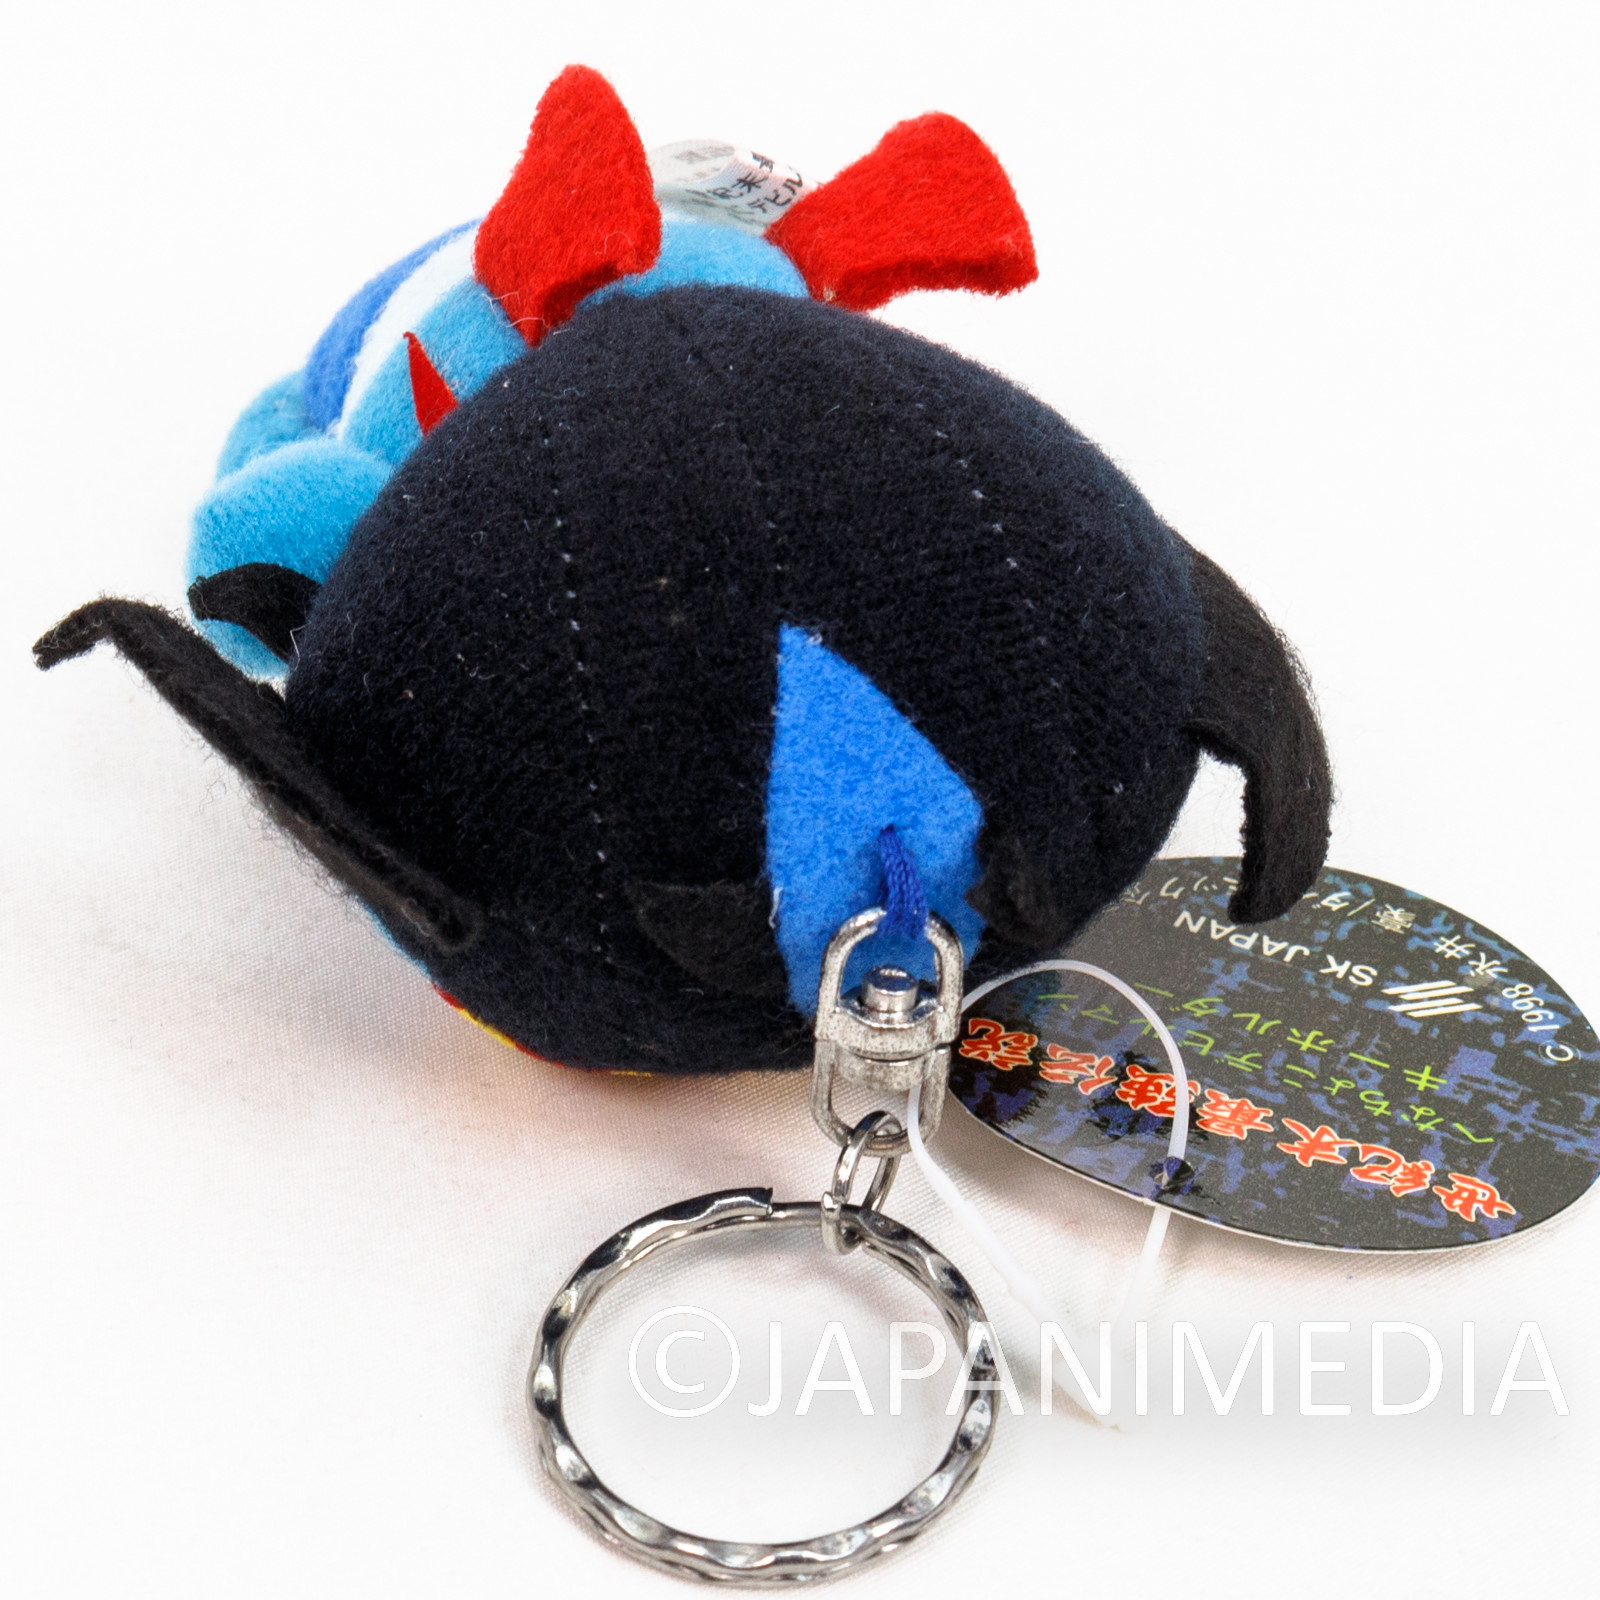 Devilman 3.5" Plush Doll Keychain Blue SK Japan JAPAN ANIME